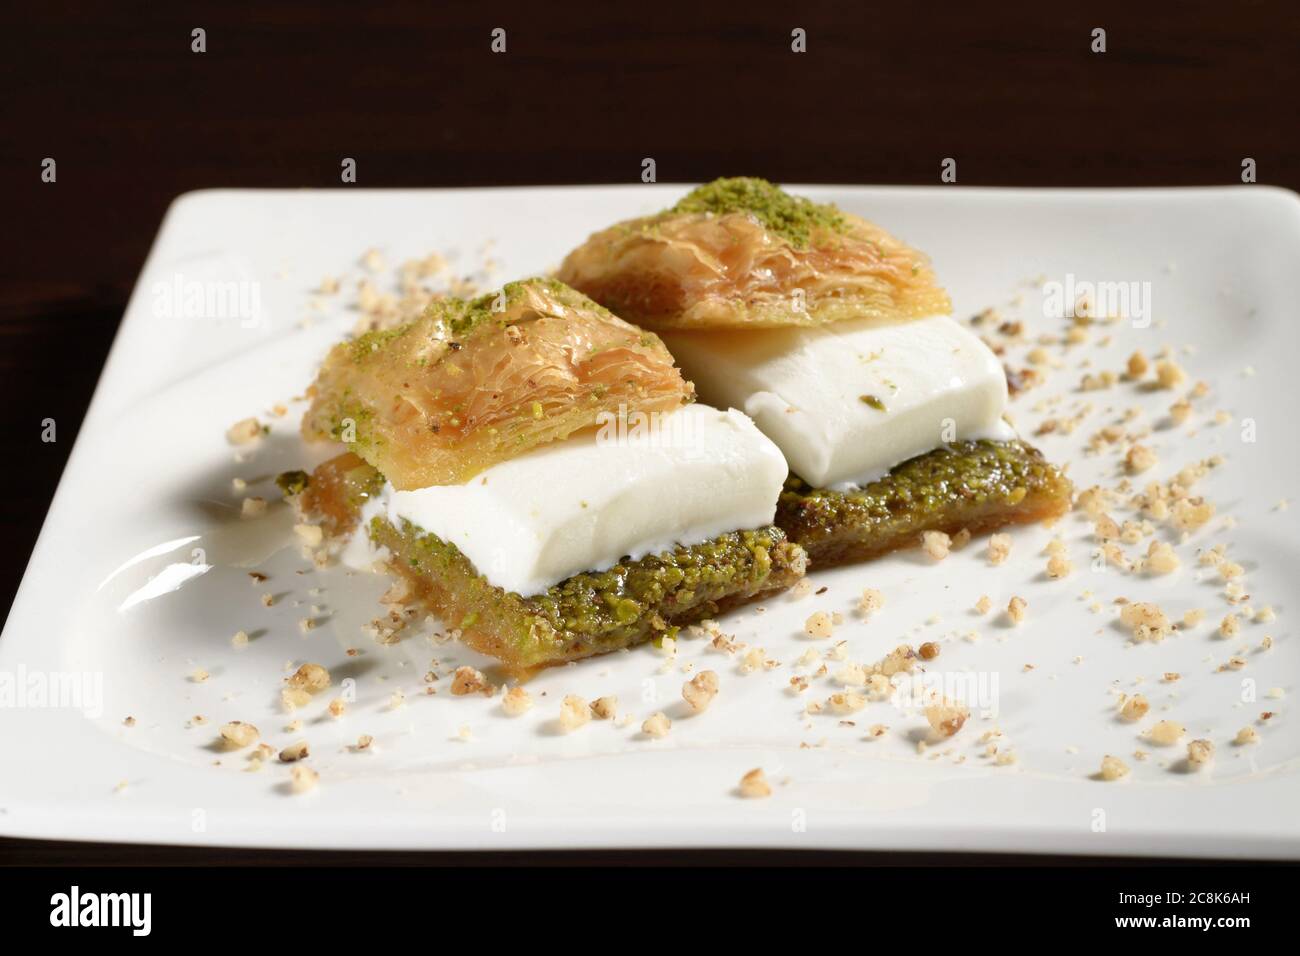 Baklava mit Eis auf einem Teller, türkische Süße. Fotos für Restaurant- und Cafe-Menüs Stockfoto